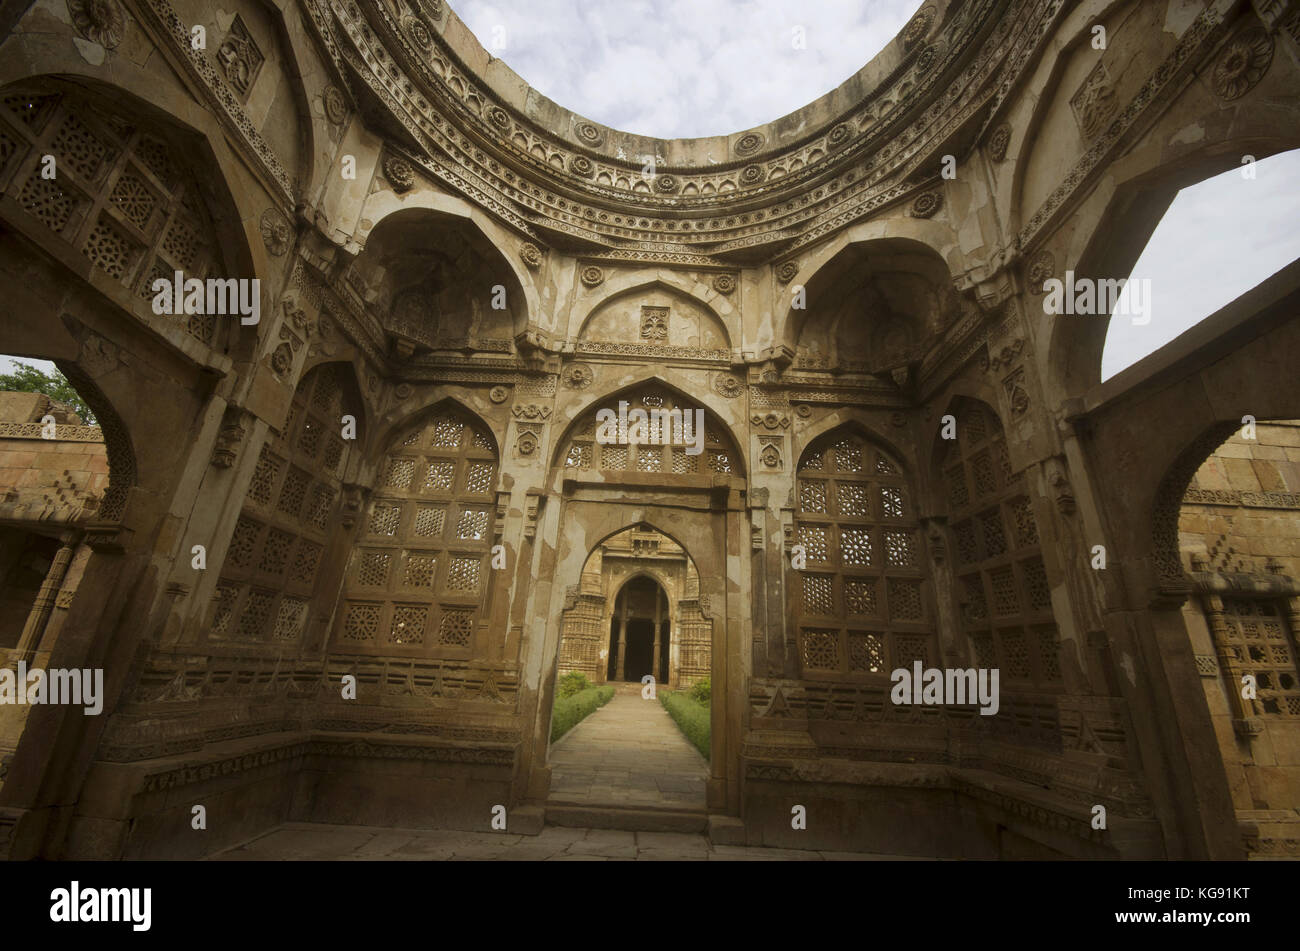 Innenansicht einer großen Kuppel bei Jami Masjid (Moschee), UNESCO-geschützten Champaner - Pavagadh Archäologischen Park, Gujarat, Indien. Datiert 1513, konstruieren Stockfoto